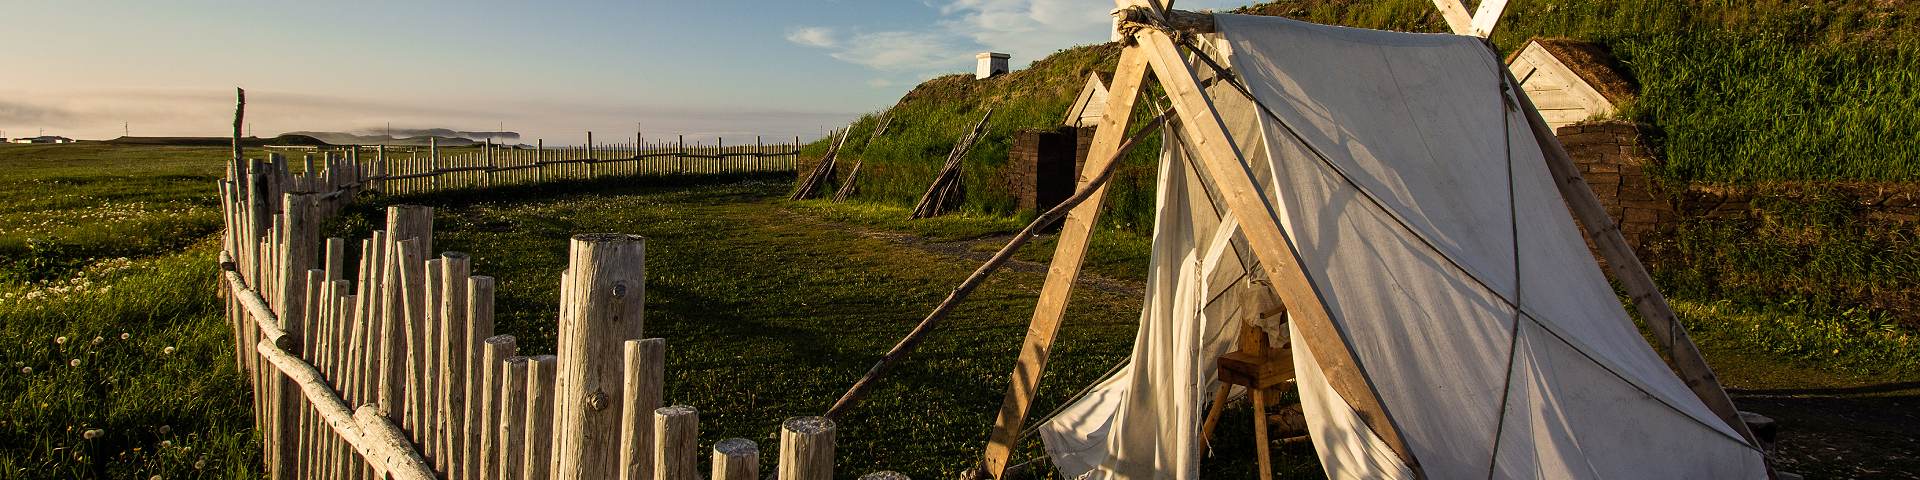 Vue d'une tente en toile devant un bâtiment en bois recouverts de gazon du campement viking au lieu historique national de L'Anse aux Meadows